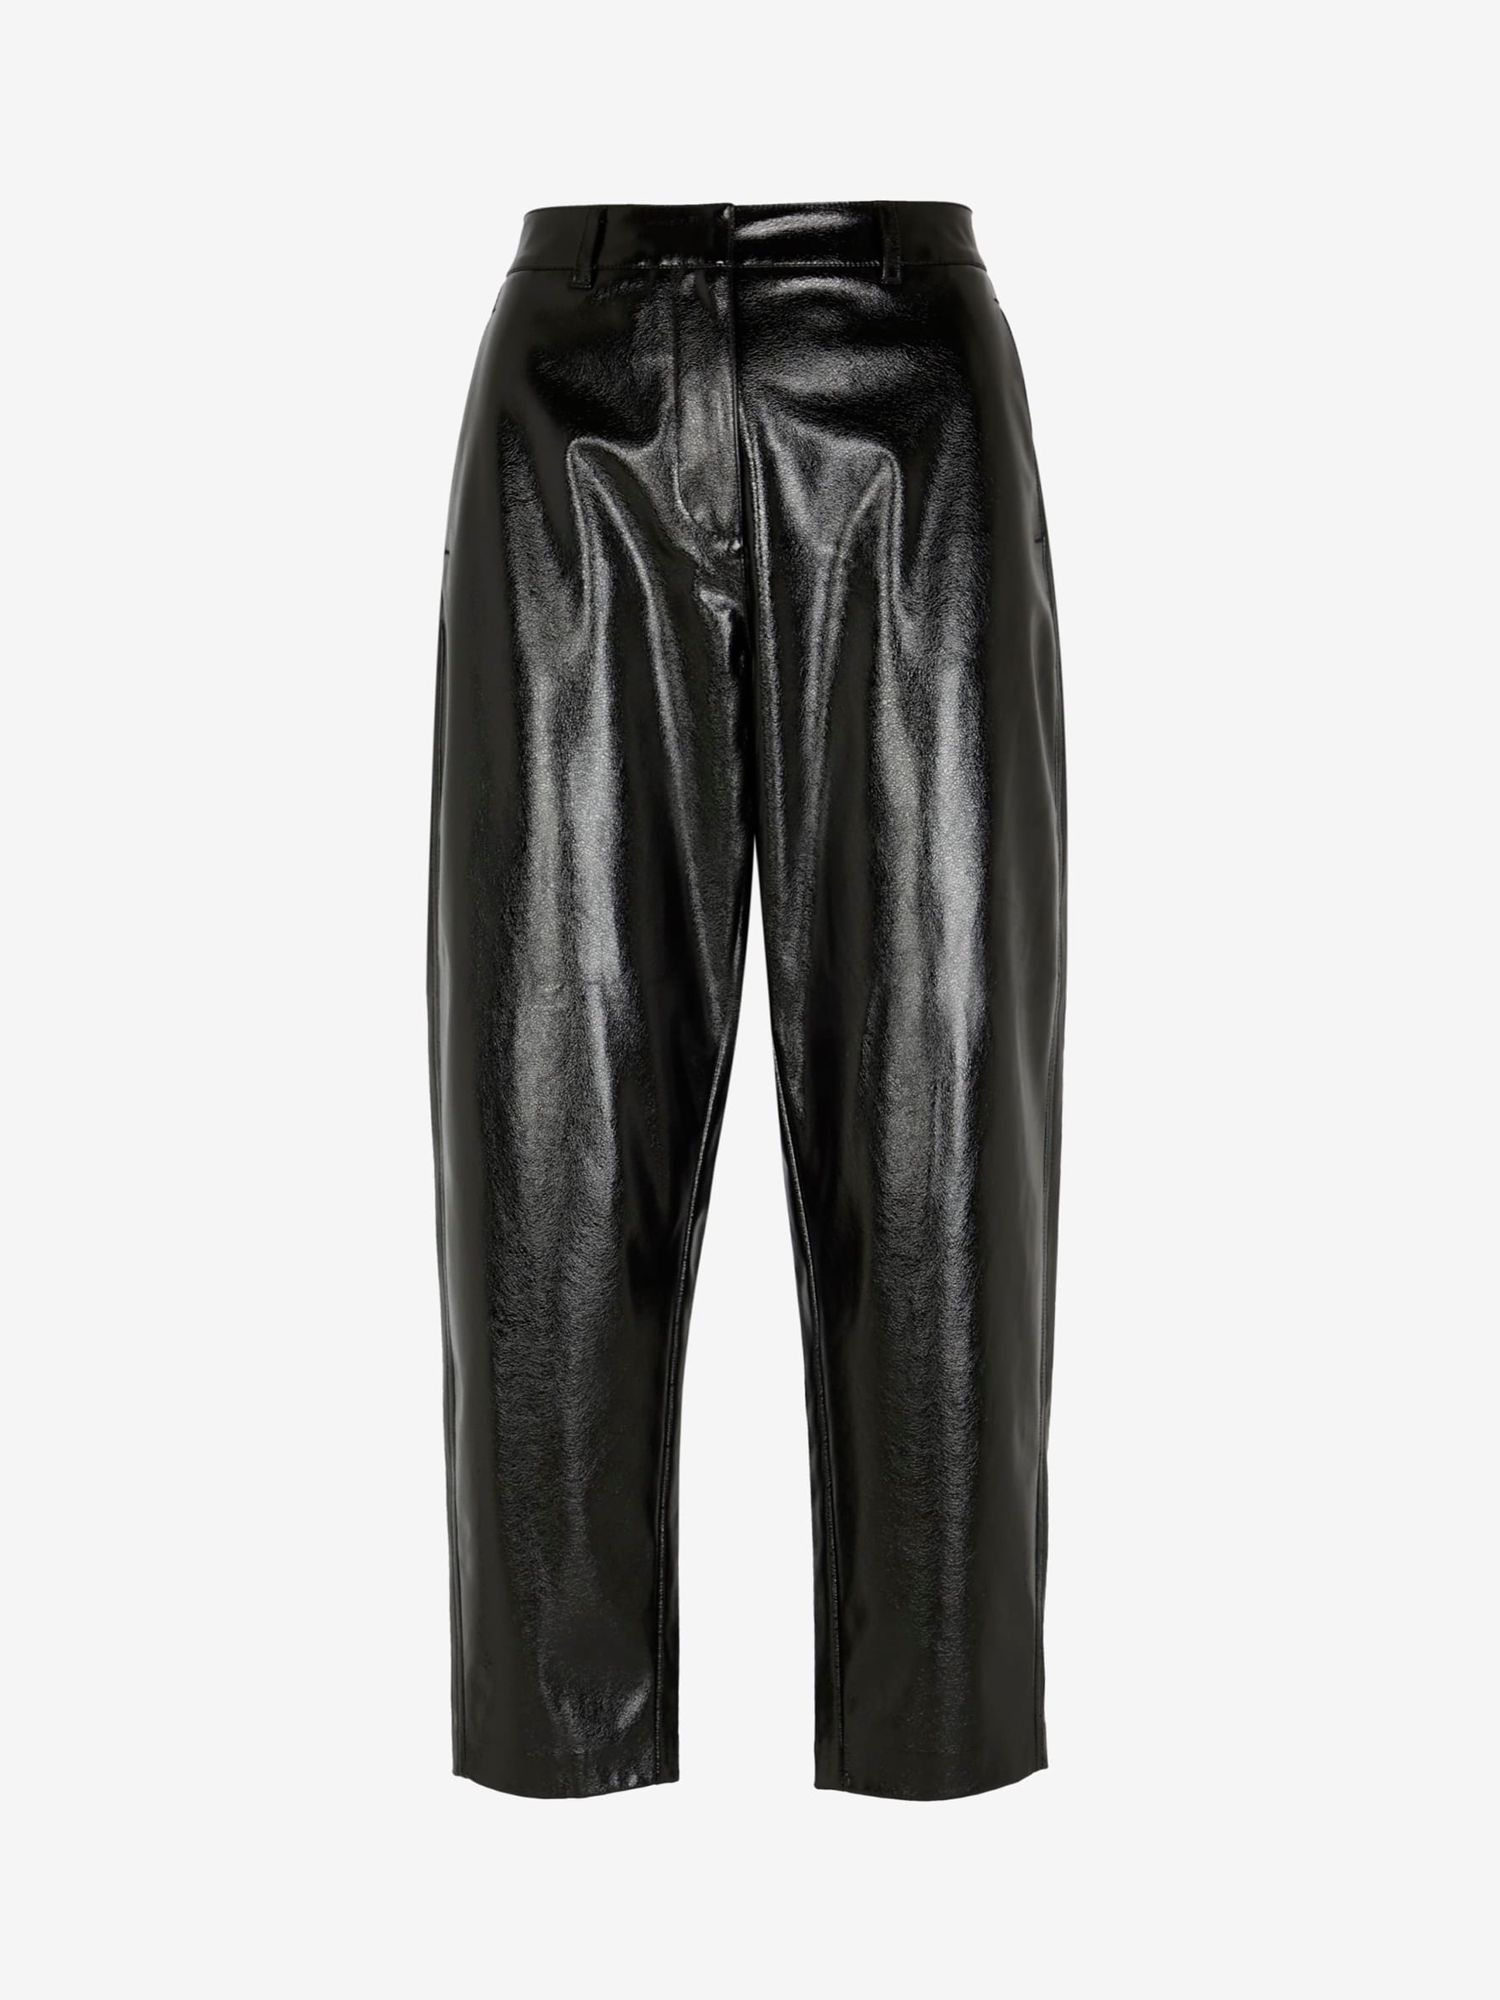 Mint Velvet Pleat Front Faux Leather Trousers, Black, 6R